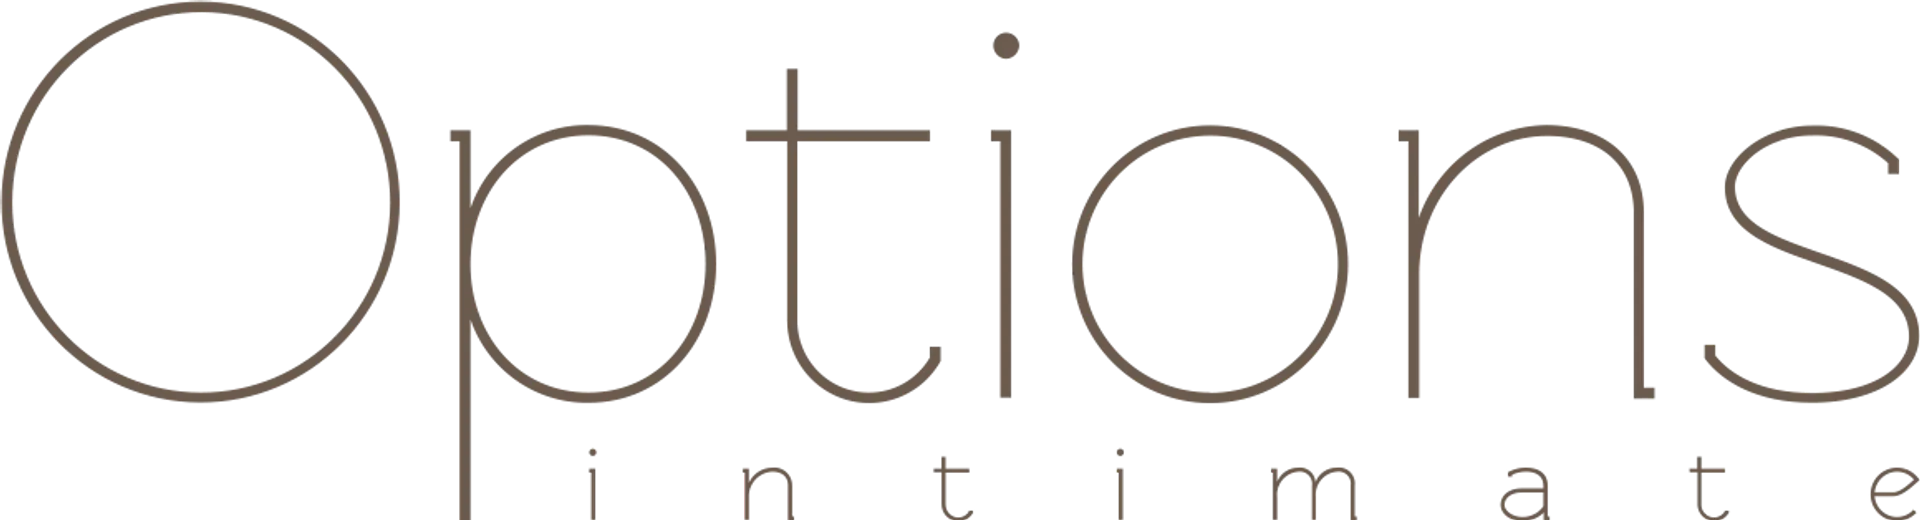 OPTIONS INTIMATE logo de catálogo